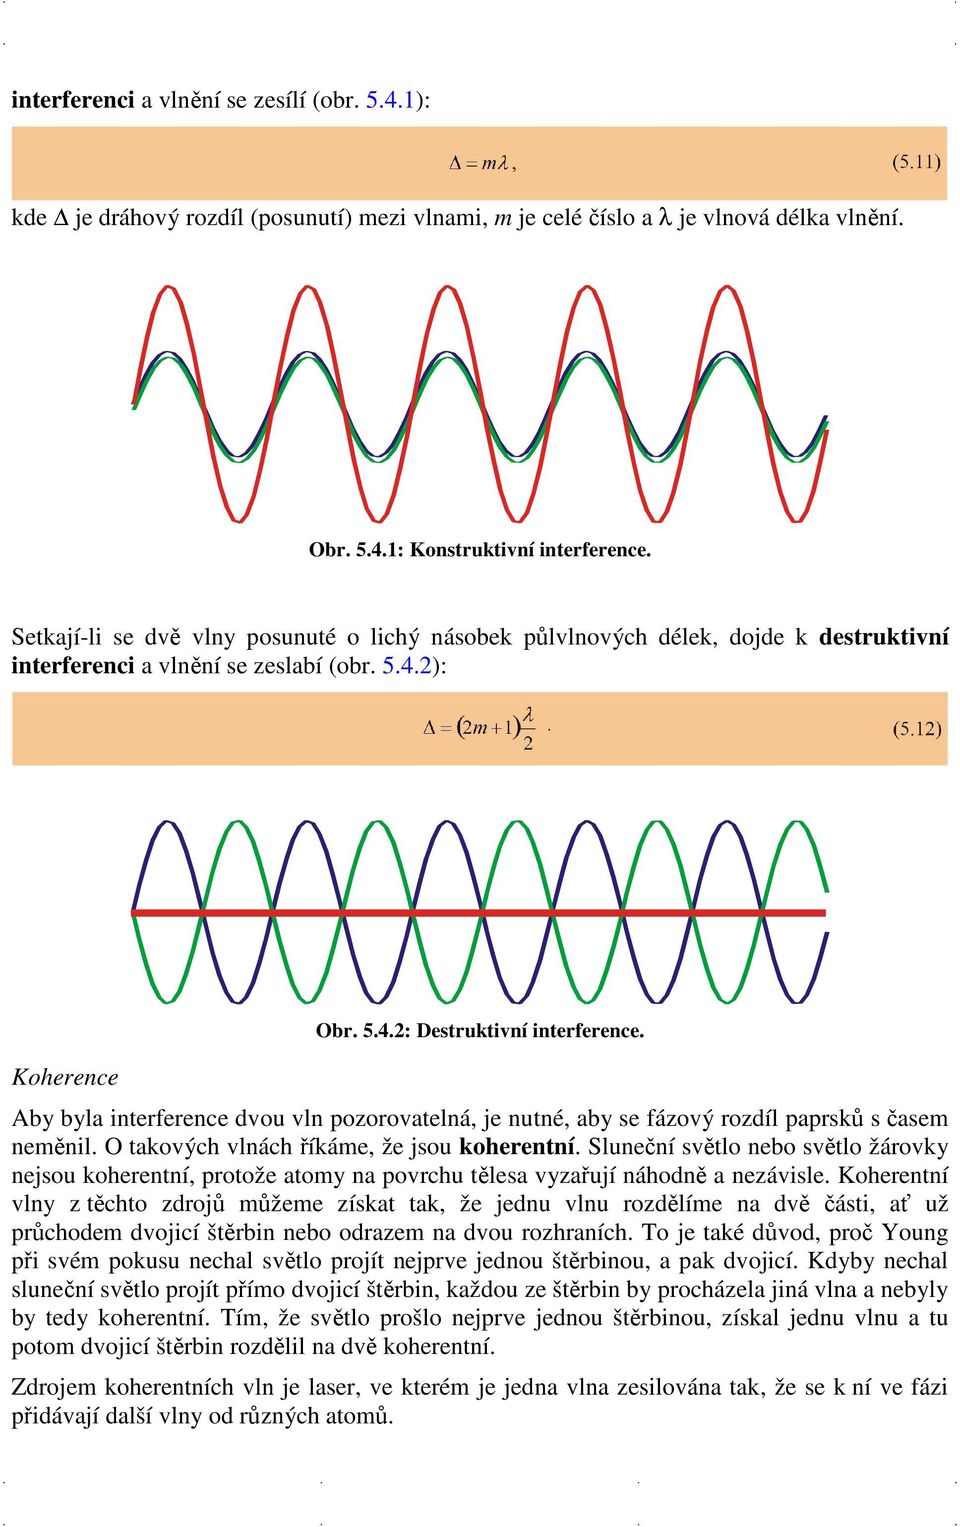 Aby byla interference dvou vln pozorovatelná, je nutné, aby se fázový rozdíl paprsků s časem neměnil. O takových vlnách říkáme, že jsou koherentní.